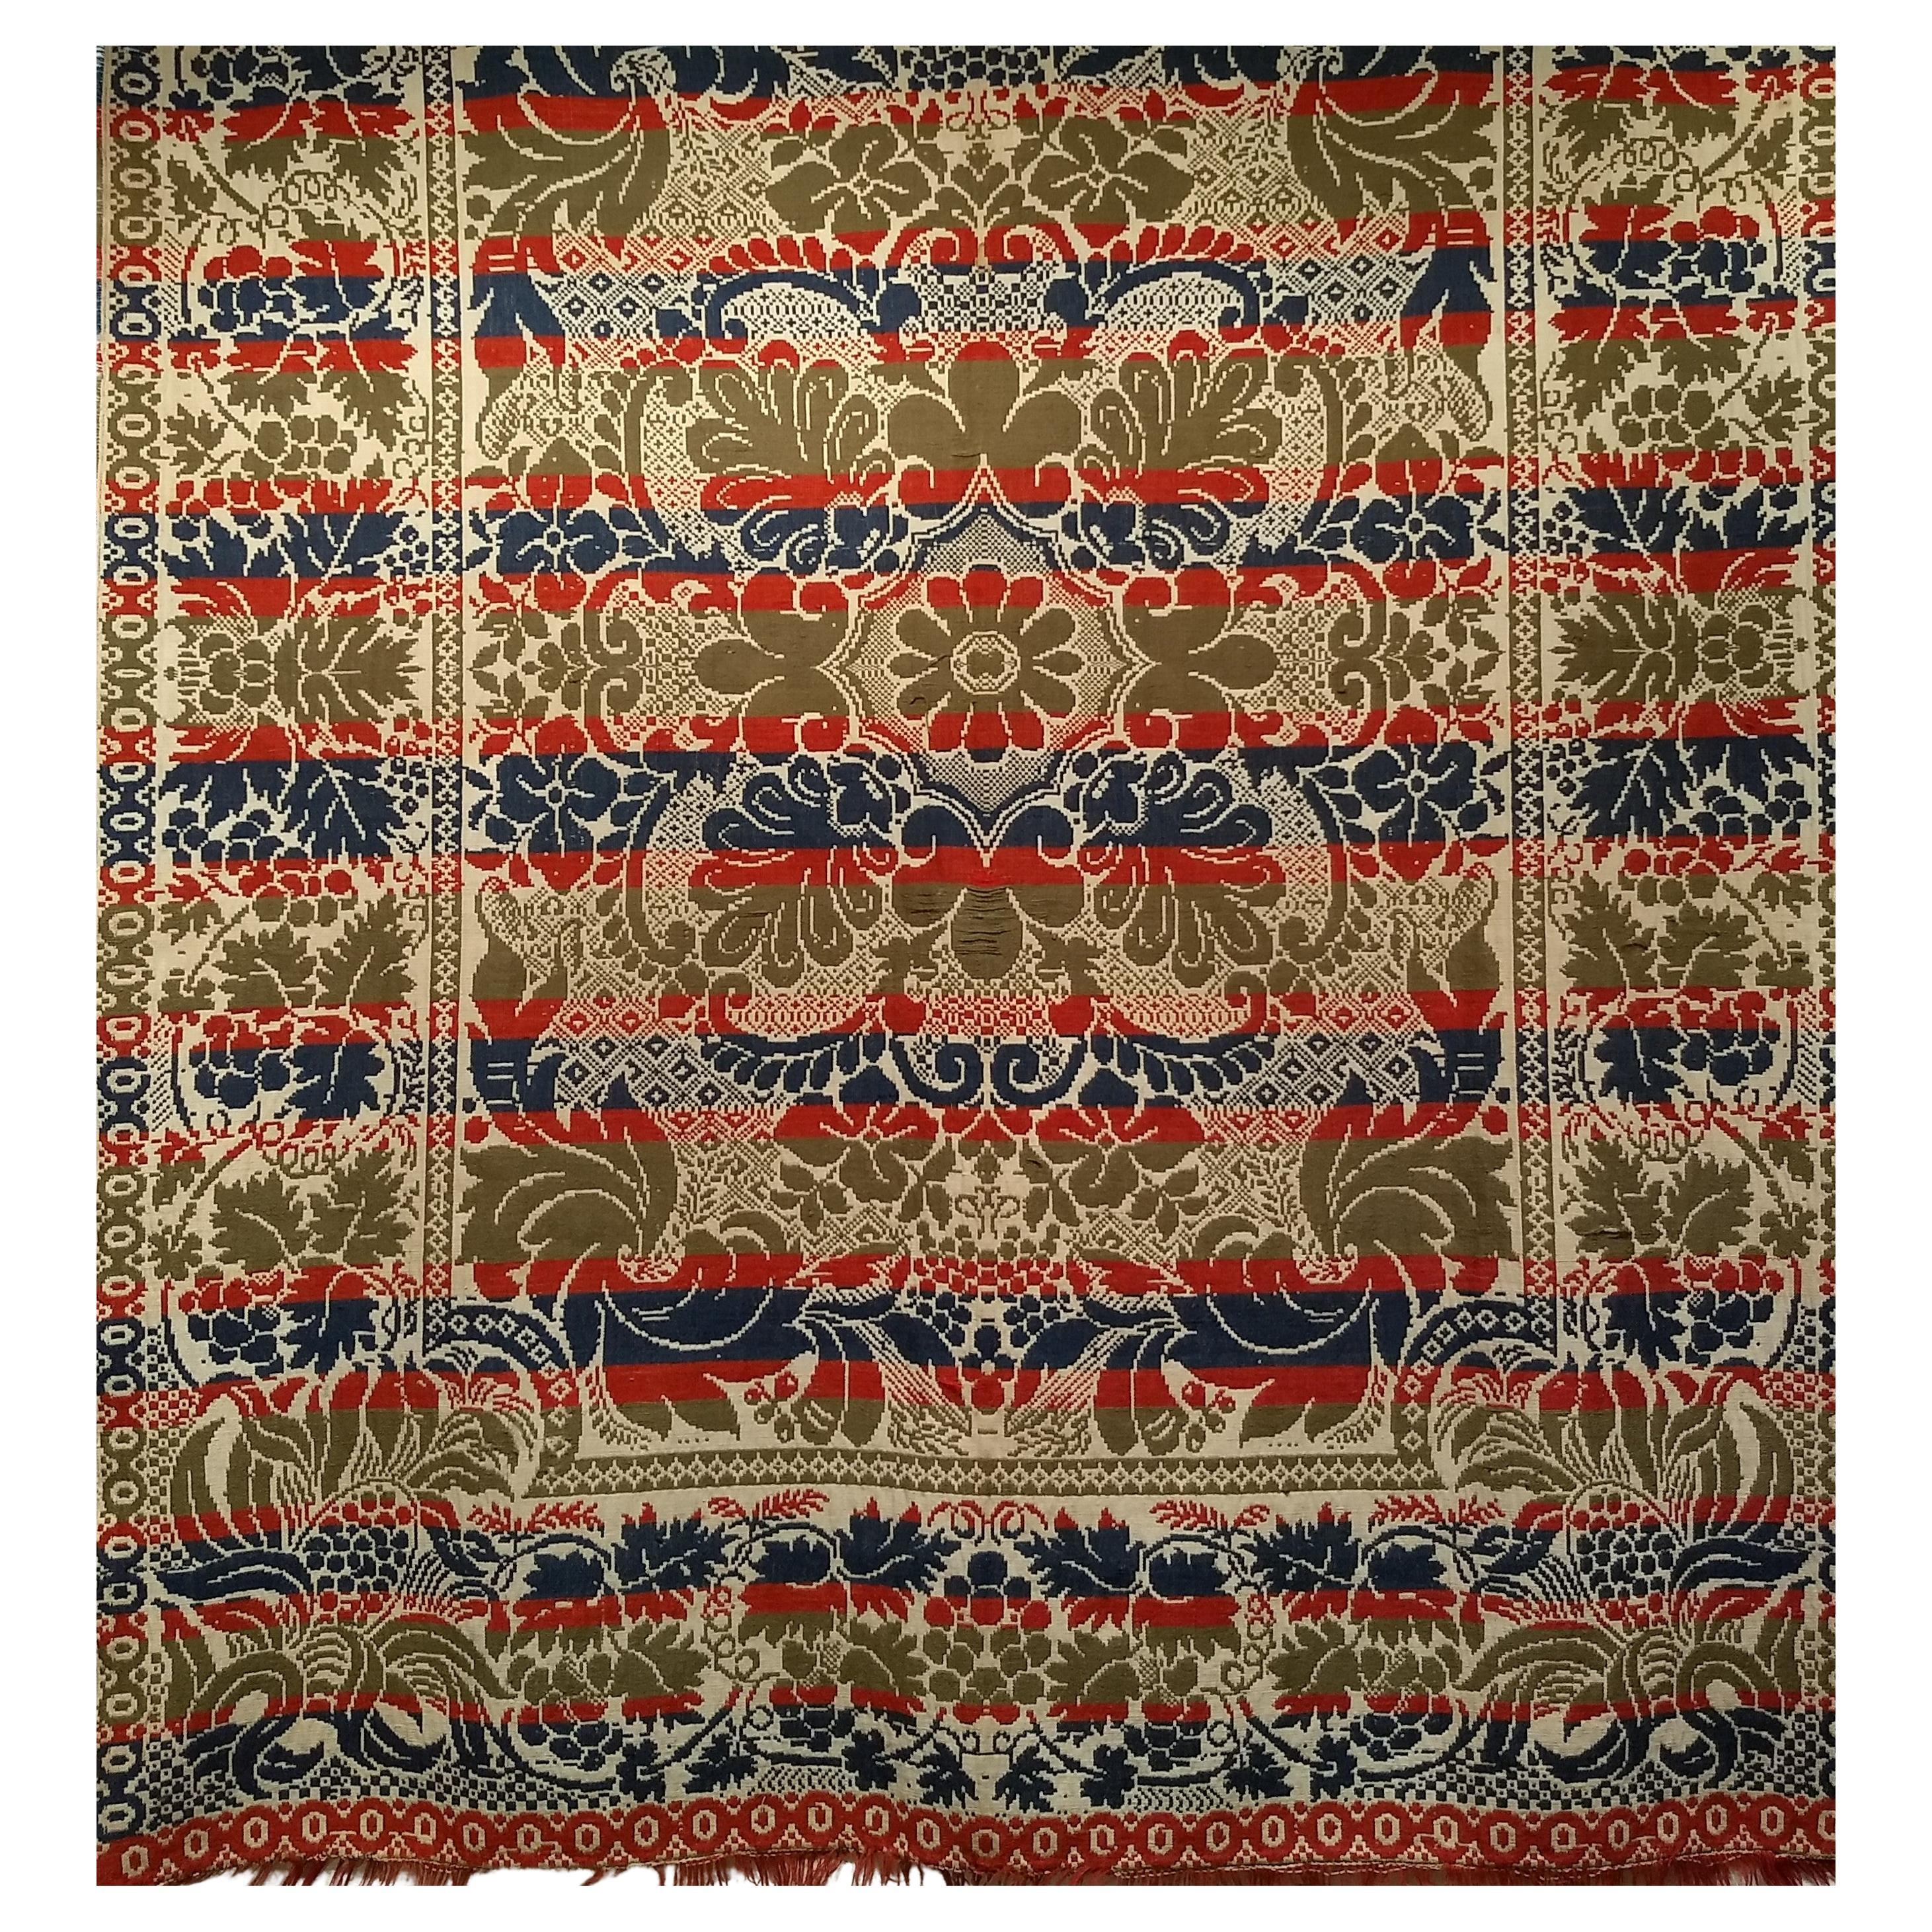 Amerikanische handgewebte Decke des 19. Jahrhunderts in vier Farben: Rot, Marineblau, Grün und Elfenbein